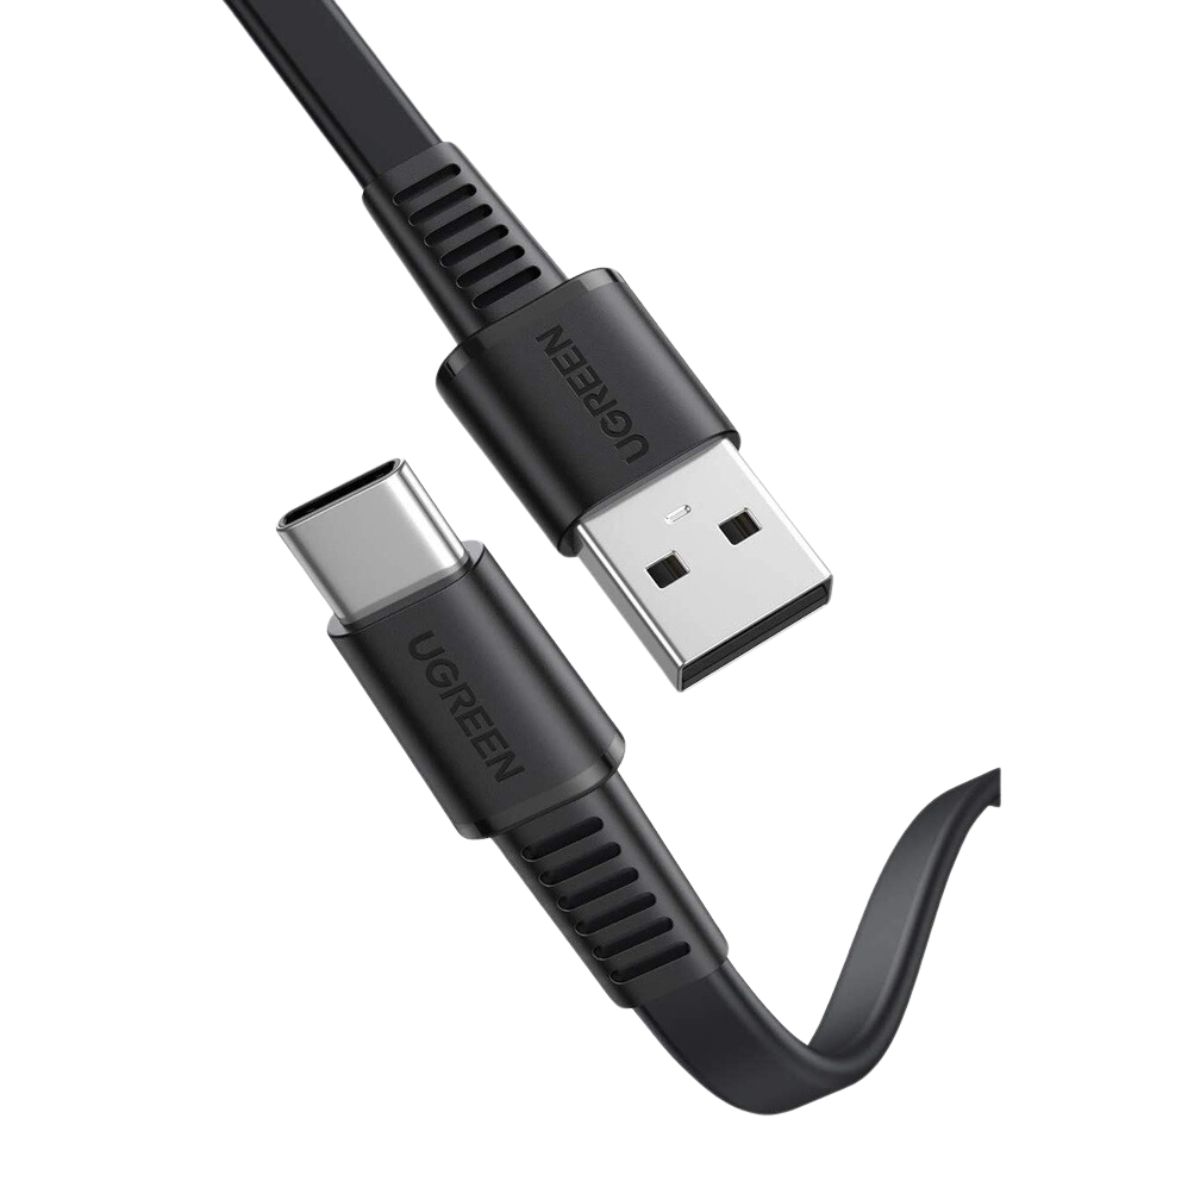 Cáp sạc nhanh 1m USB type C Ugreen US333, 10975 màu đen, hỗ trợ sạc nhanh 3A